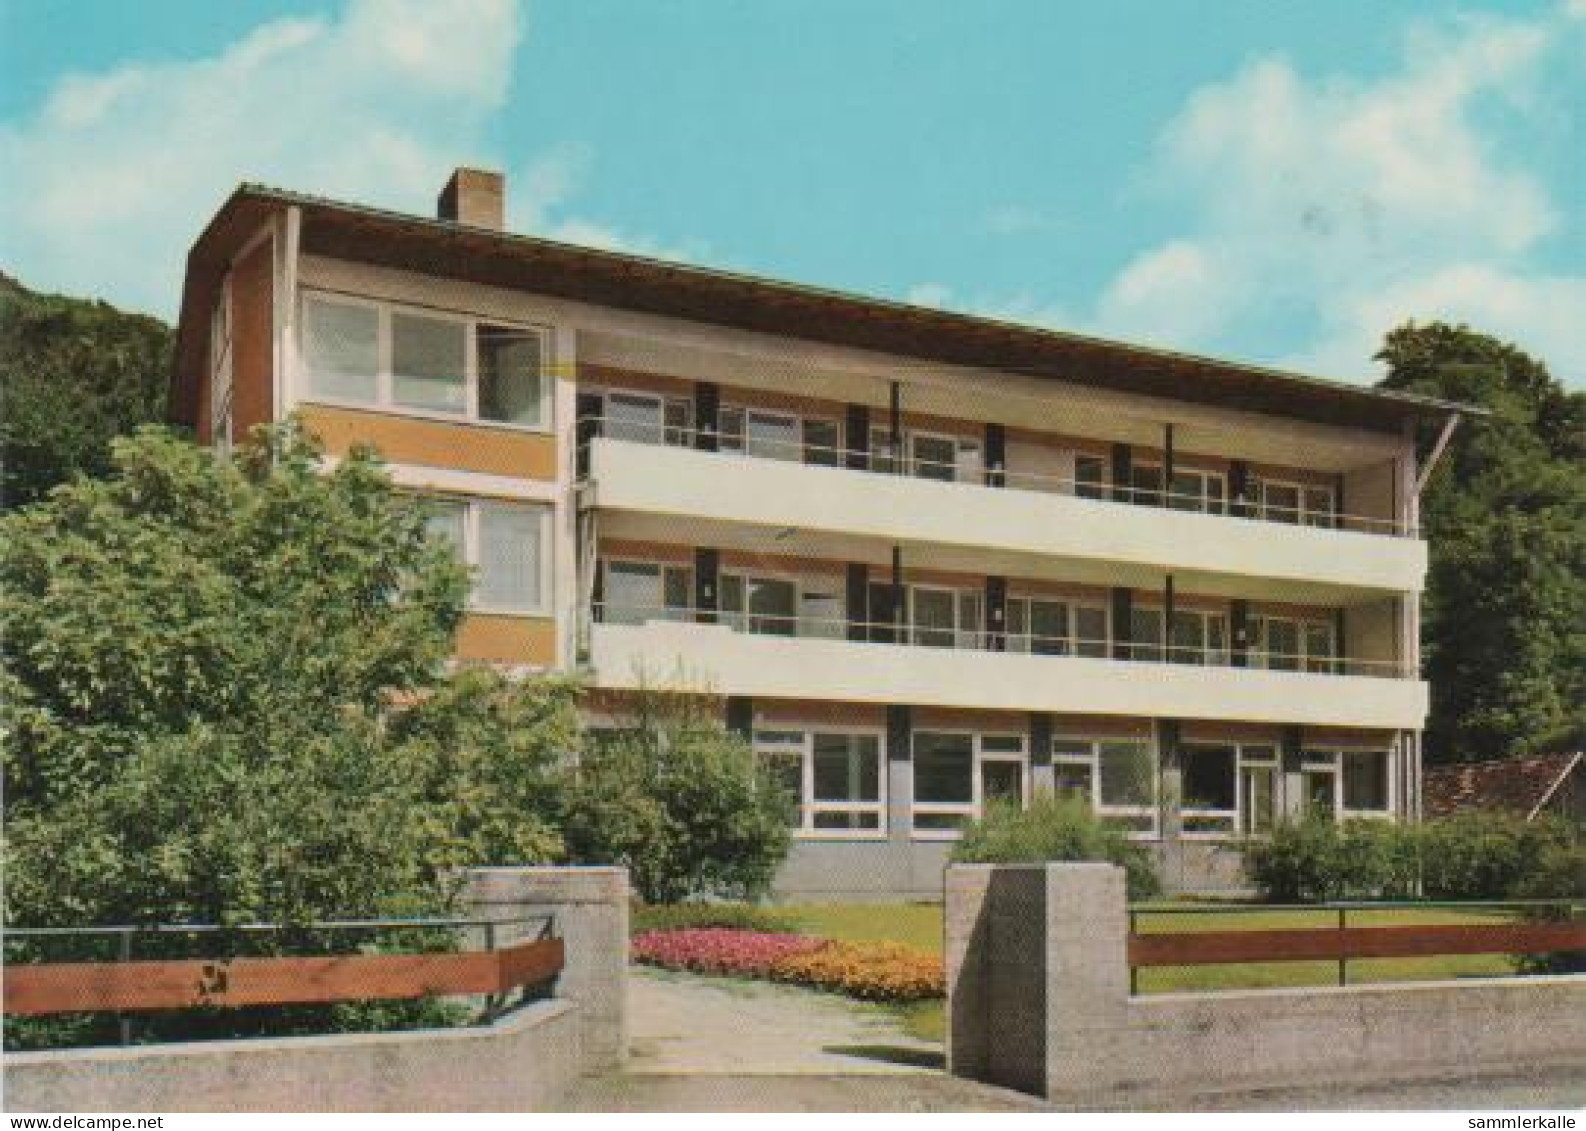 1162 - Bad Ditzenbach - Haus Hiltenburg Und St. Raphael - 1985 - Goeppingen